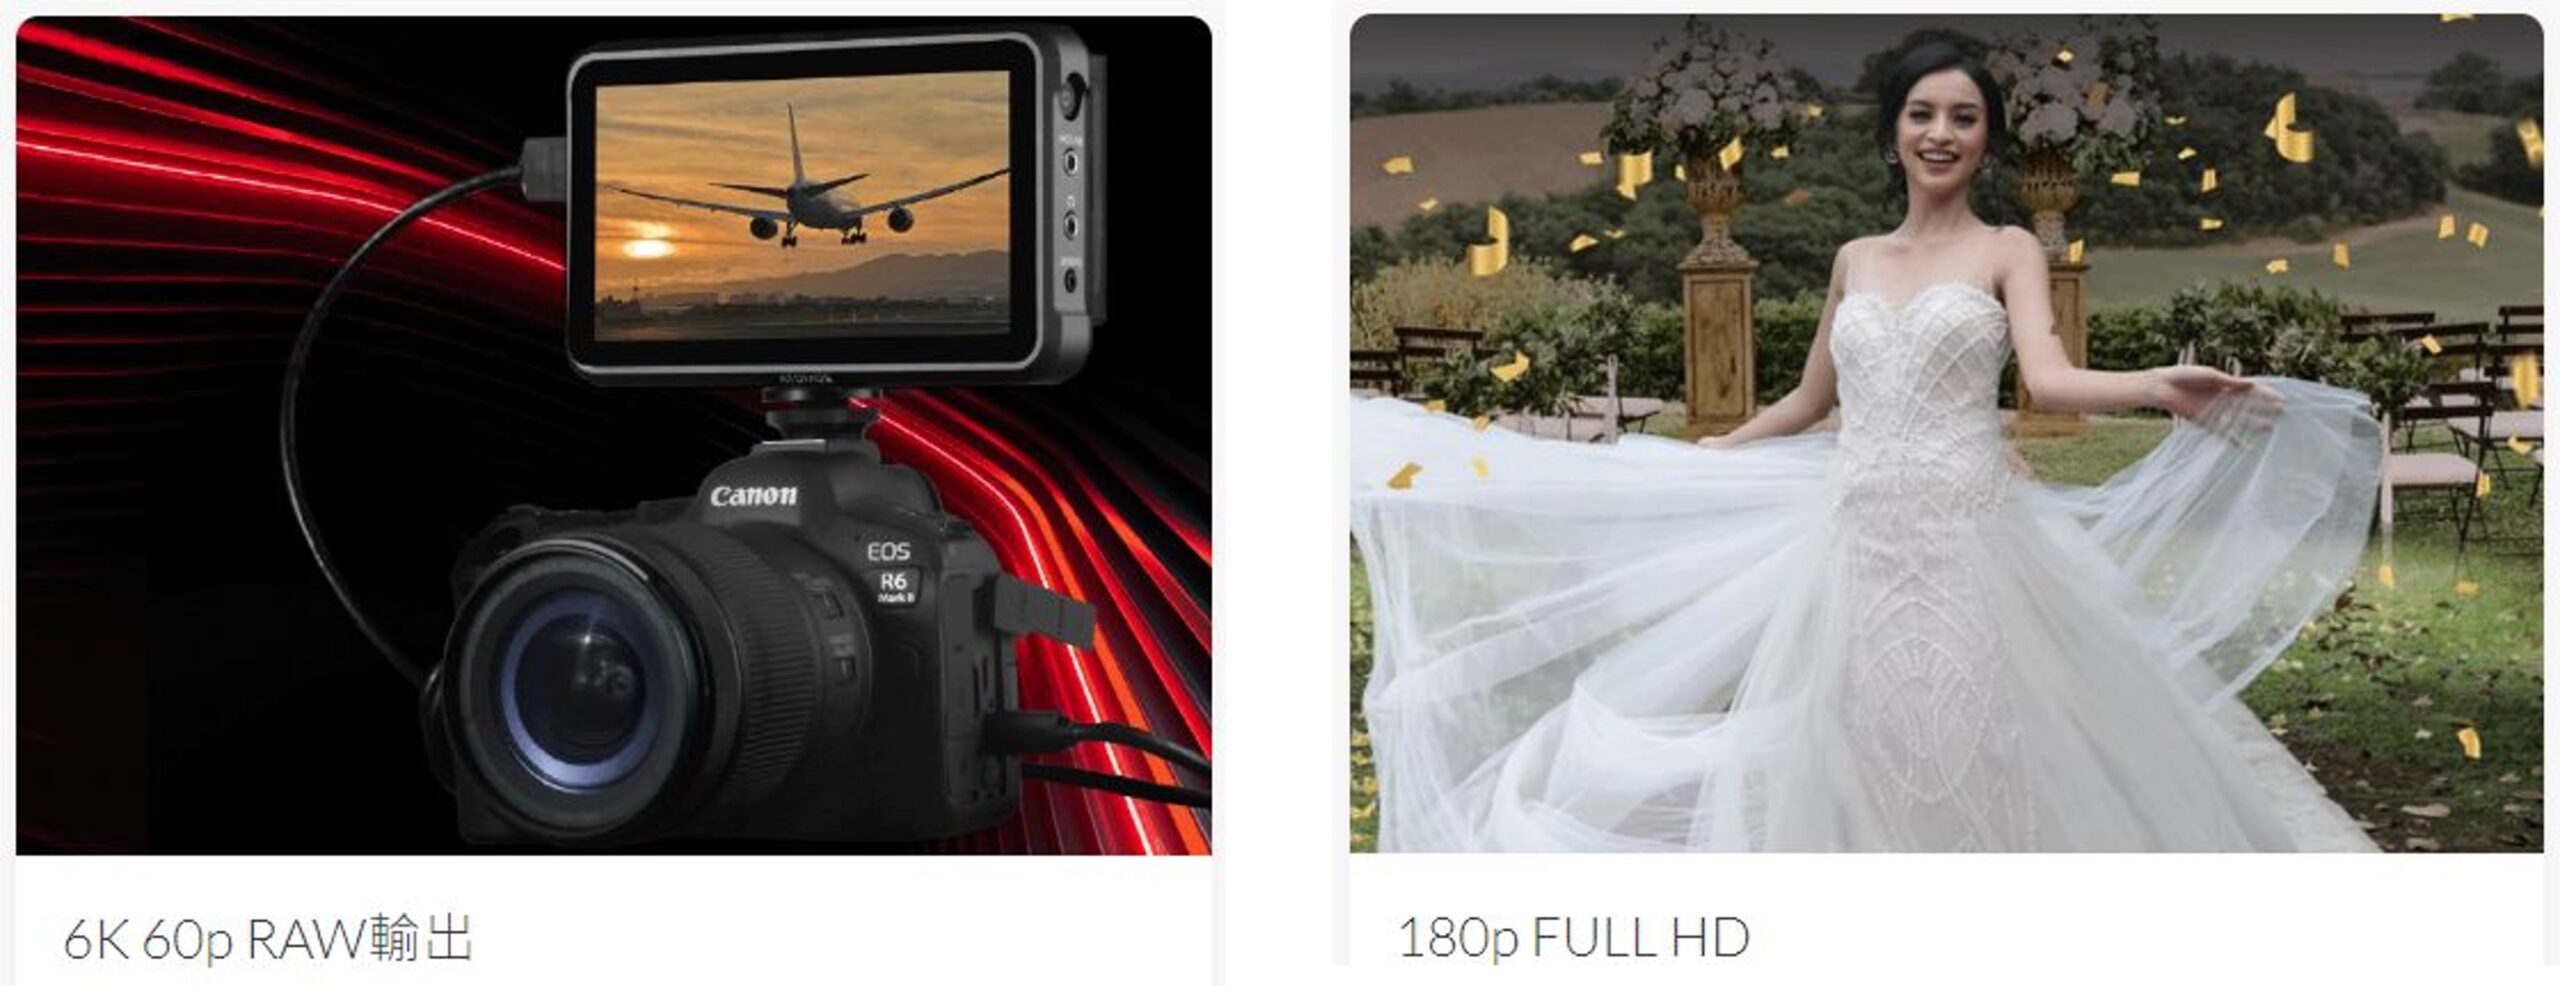 [比攝影119] Canon EOS R6M2 規格整理與說明 - 硬體小改、軟體昇級之作品